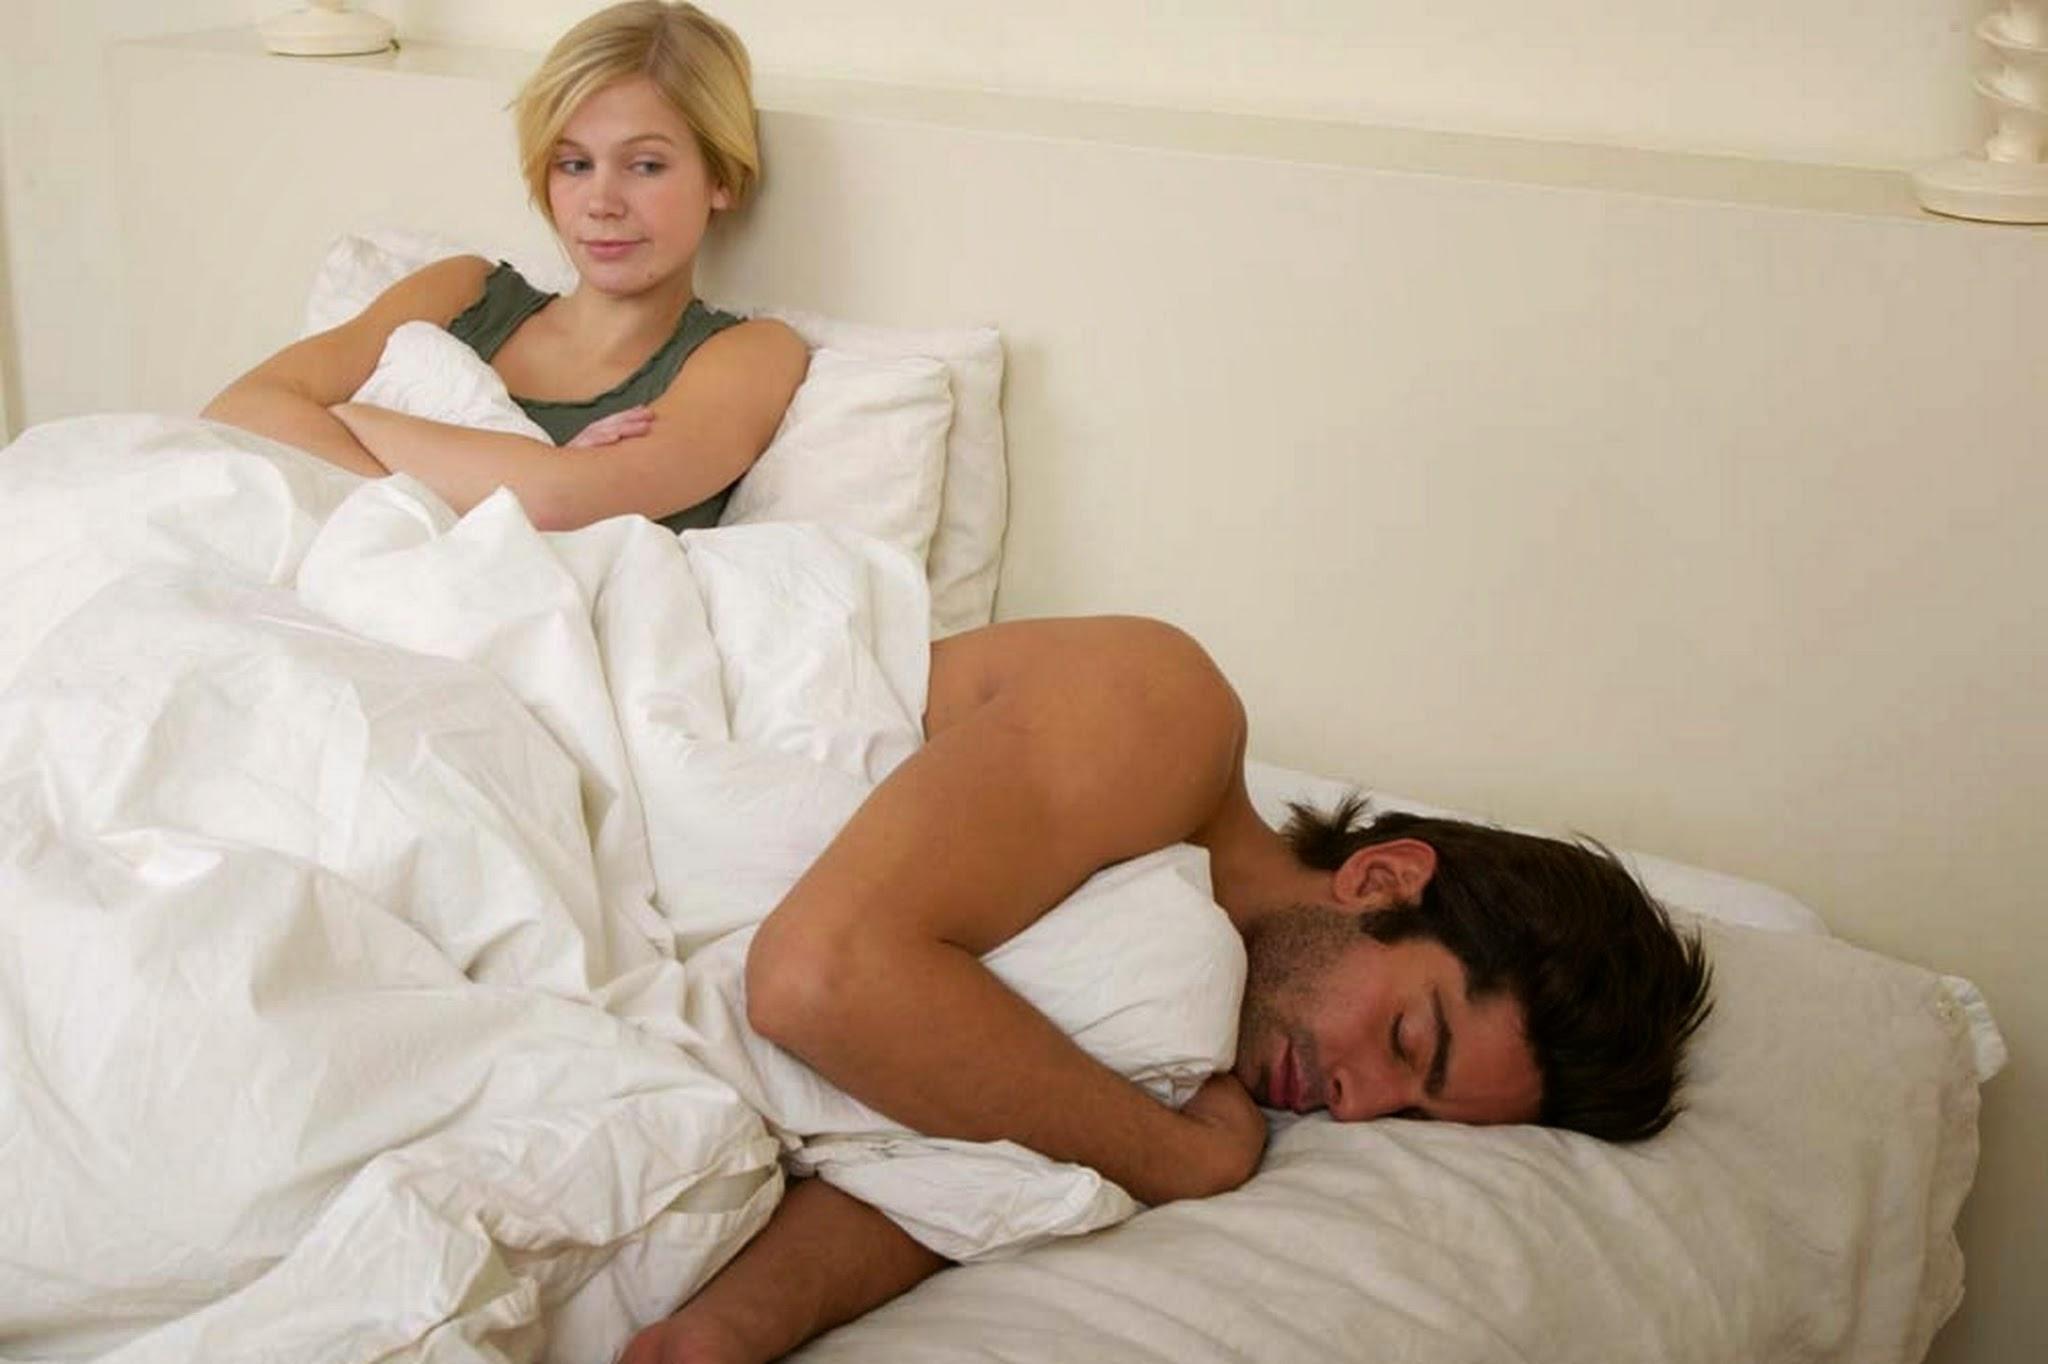 Рассказ притворилась спящей. Мужчина в постели с женой. Женщина отказывает мужчине в постели. Женщина хочет переспать.